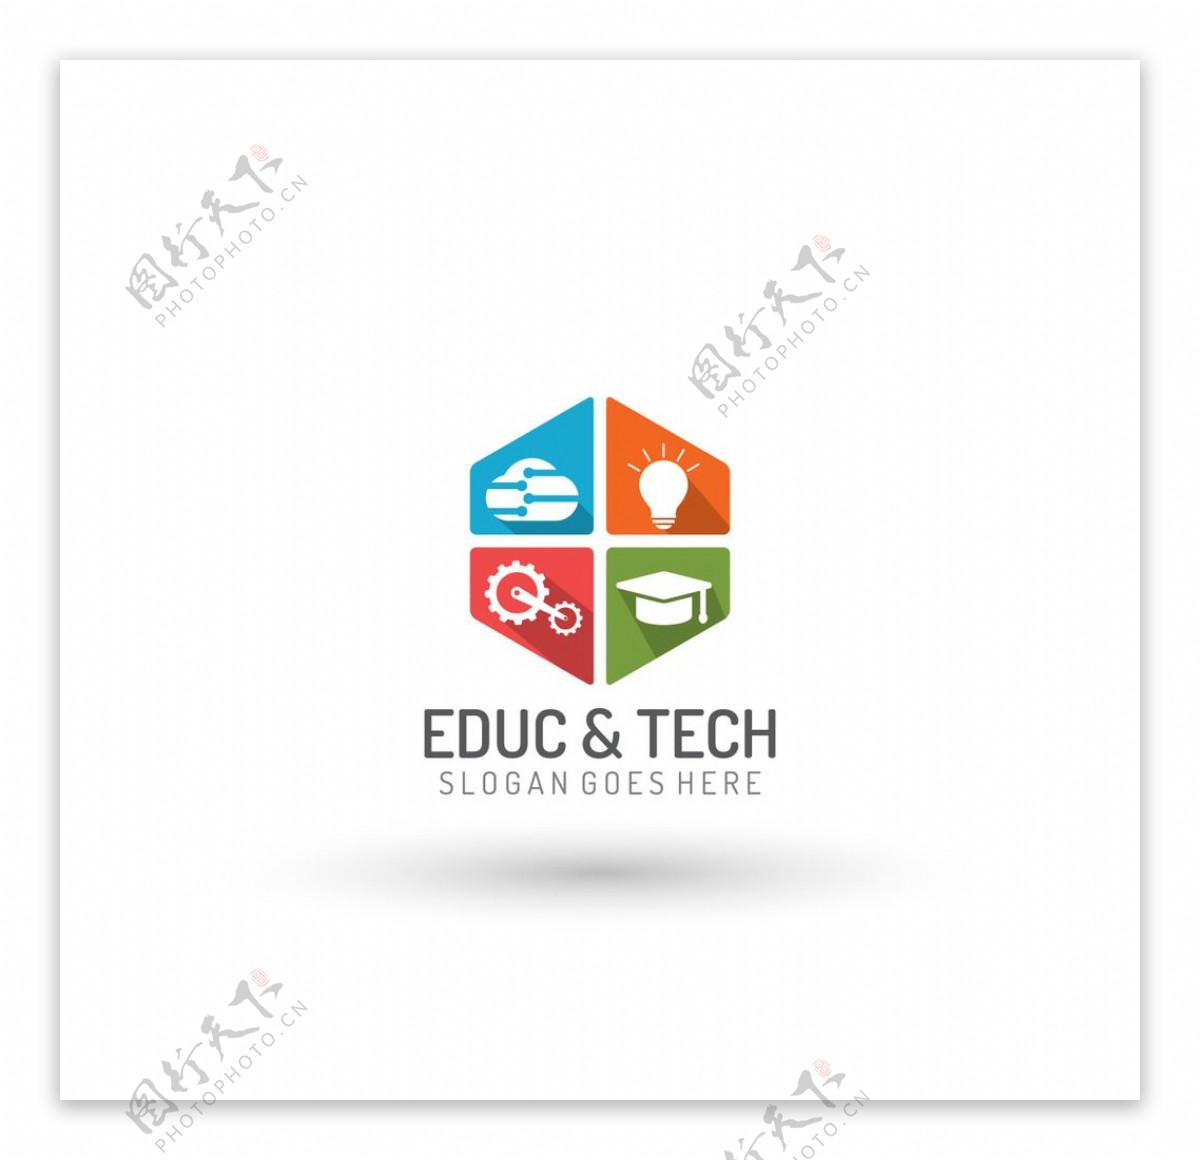 教育与技术徽标模板